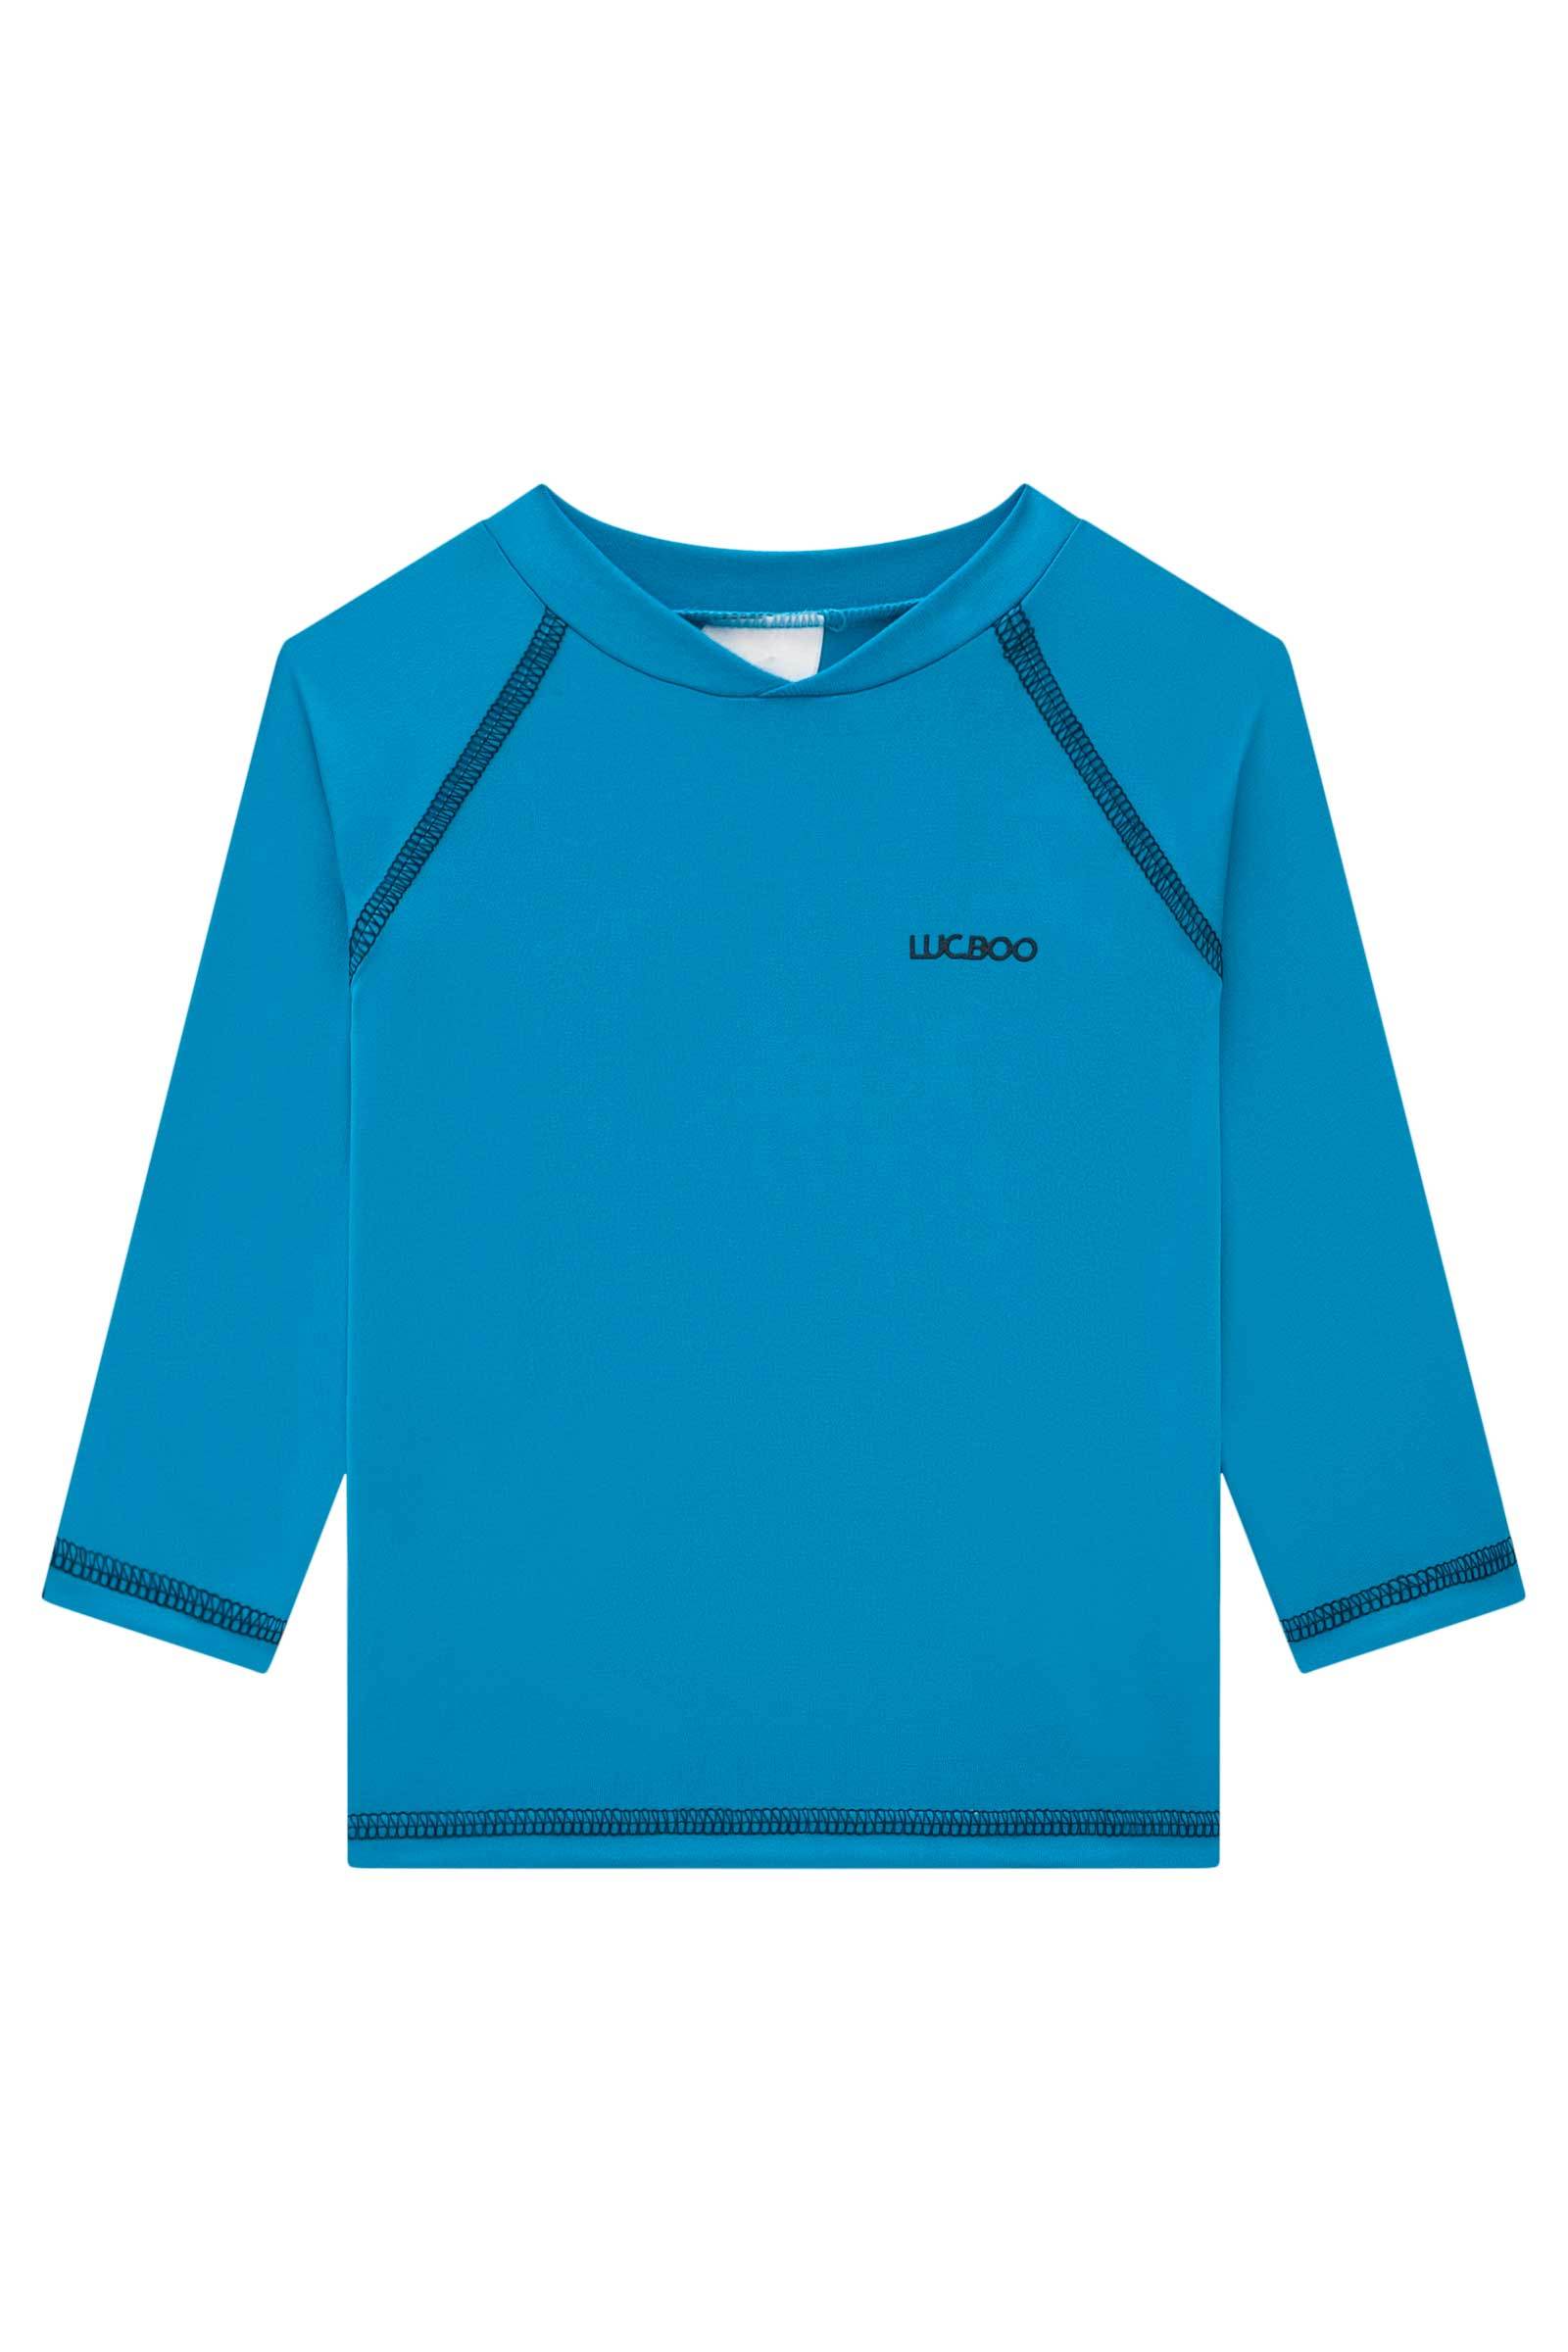 Camiseta em Malha UV Dry com Proteção UV 50+ 74998 LucBoo